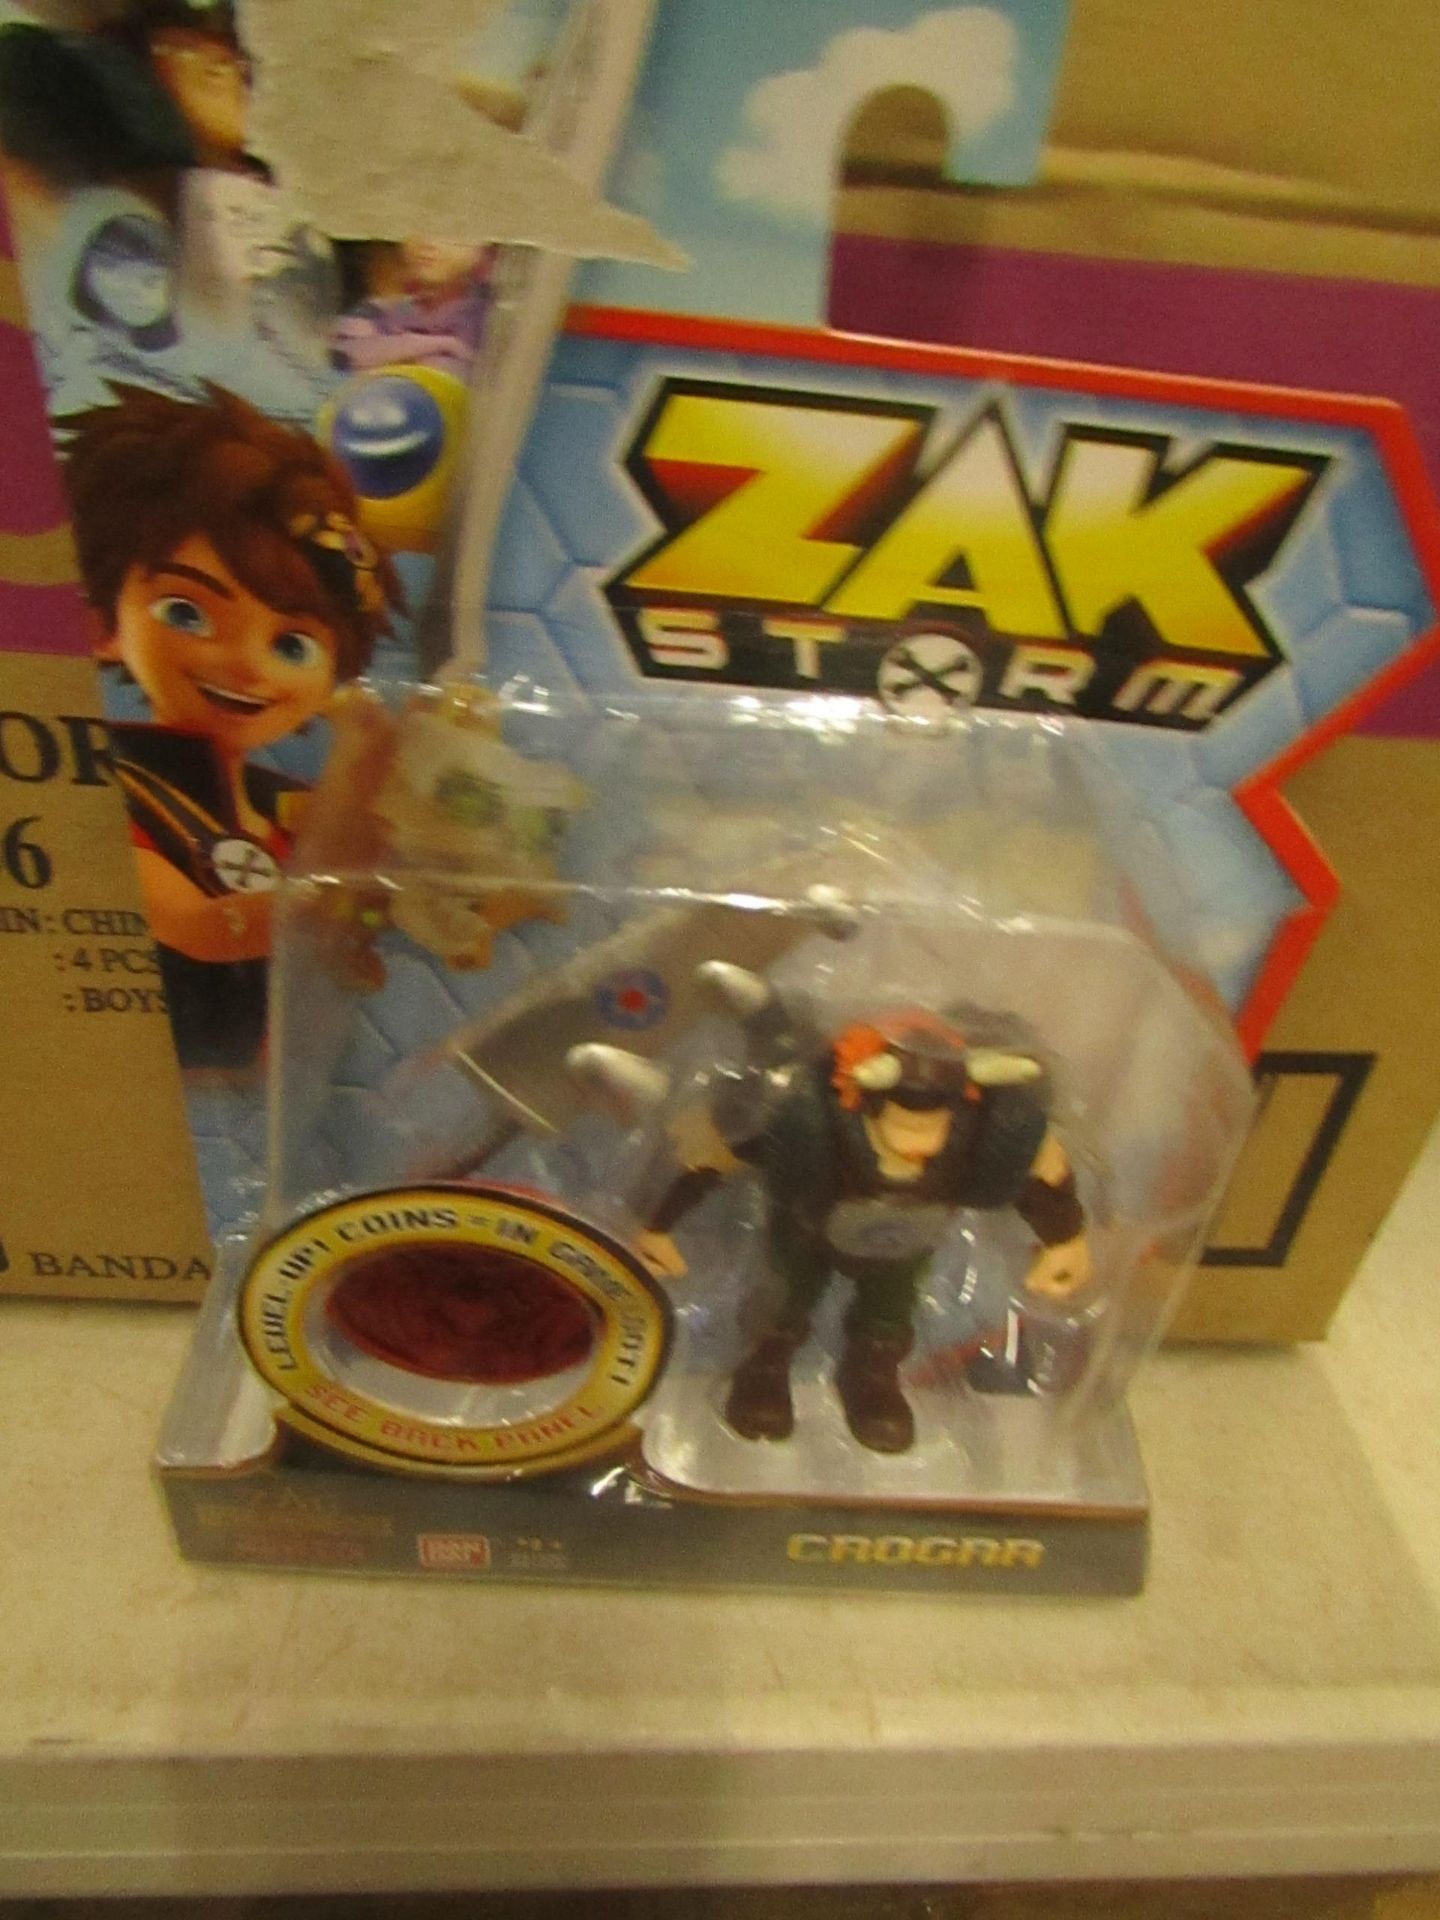 4 x Zak Storm Crogar Figures new & packaged